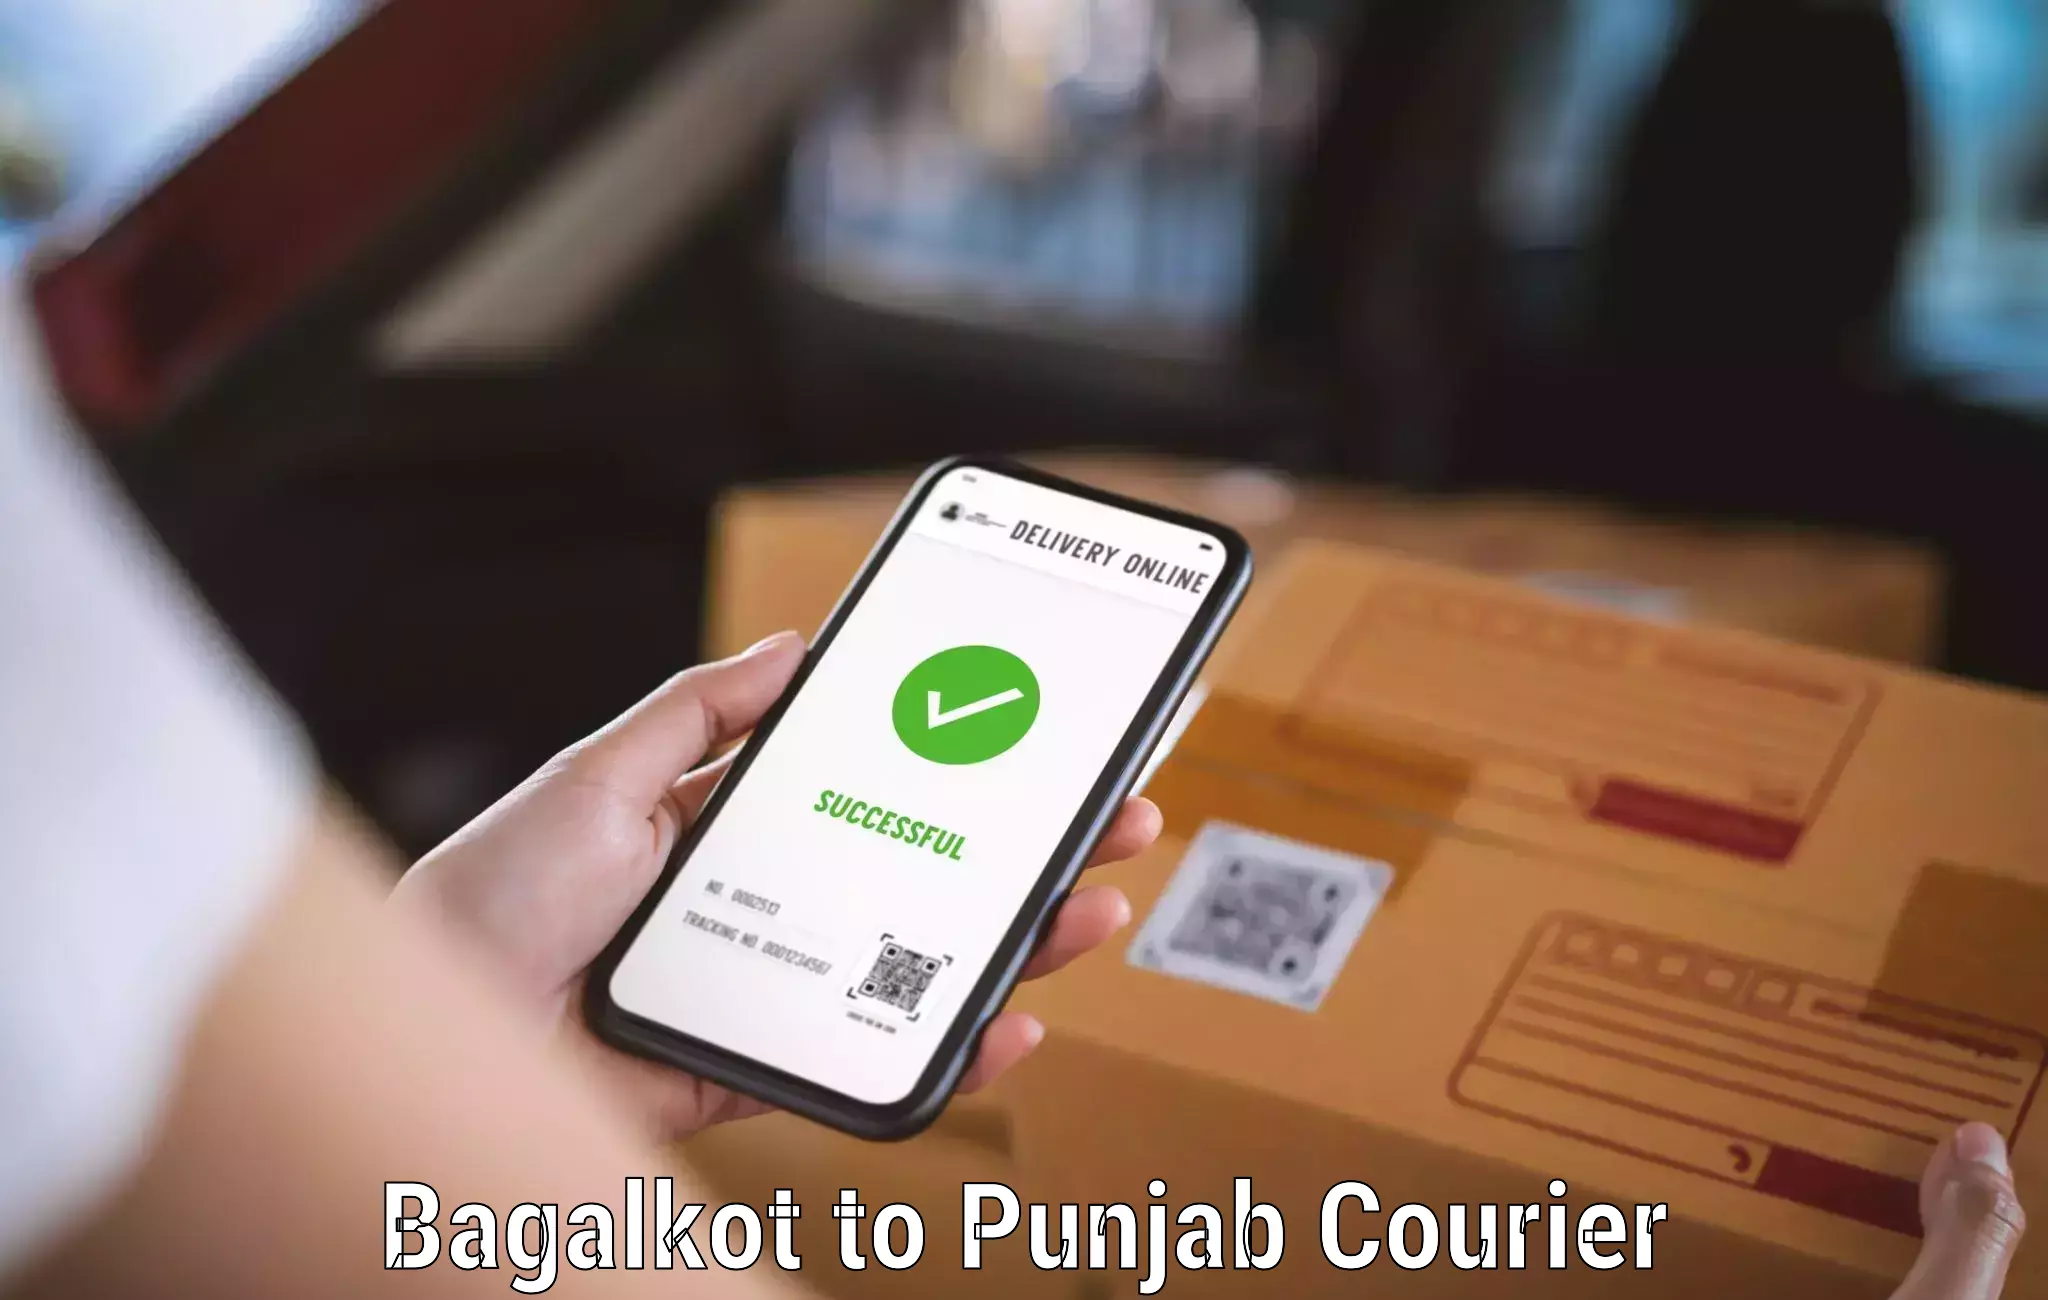 Digital courier platforms Bagalkot to Abohar